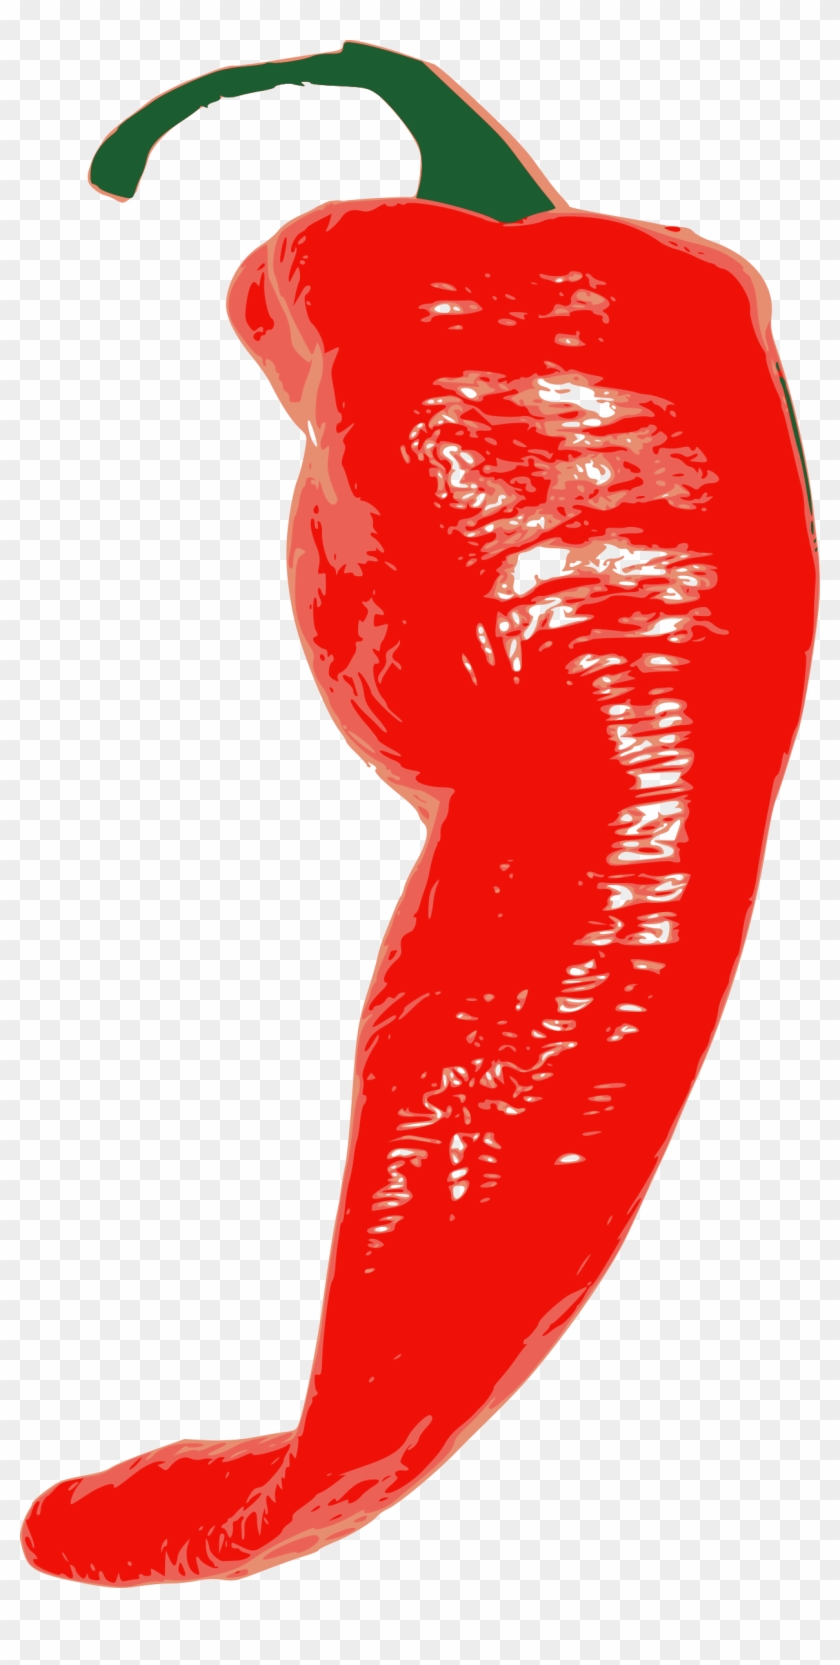 Free Vector Red Chili Pepper Clip Art - Chilli Pepper Clip Art Vector #635707